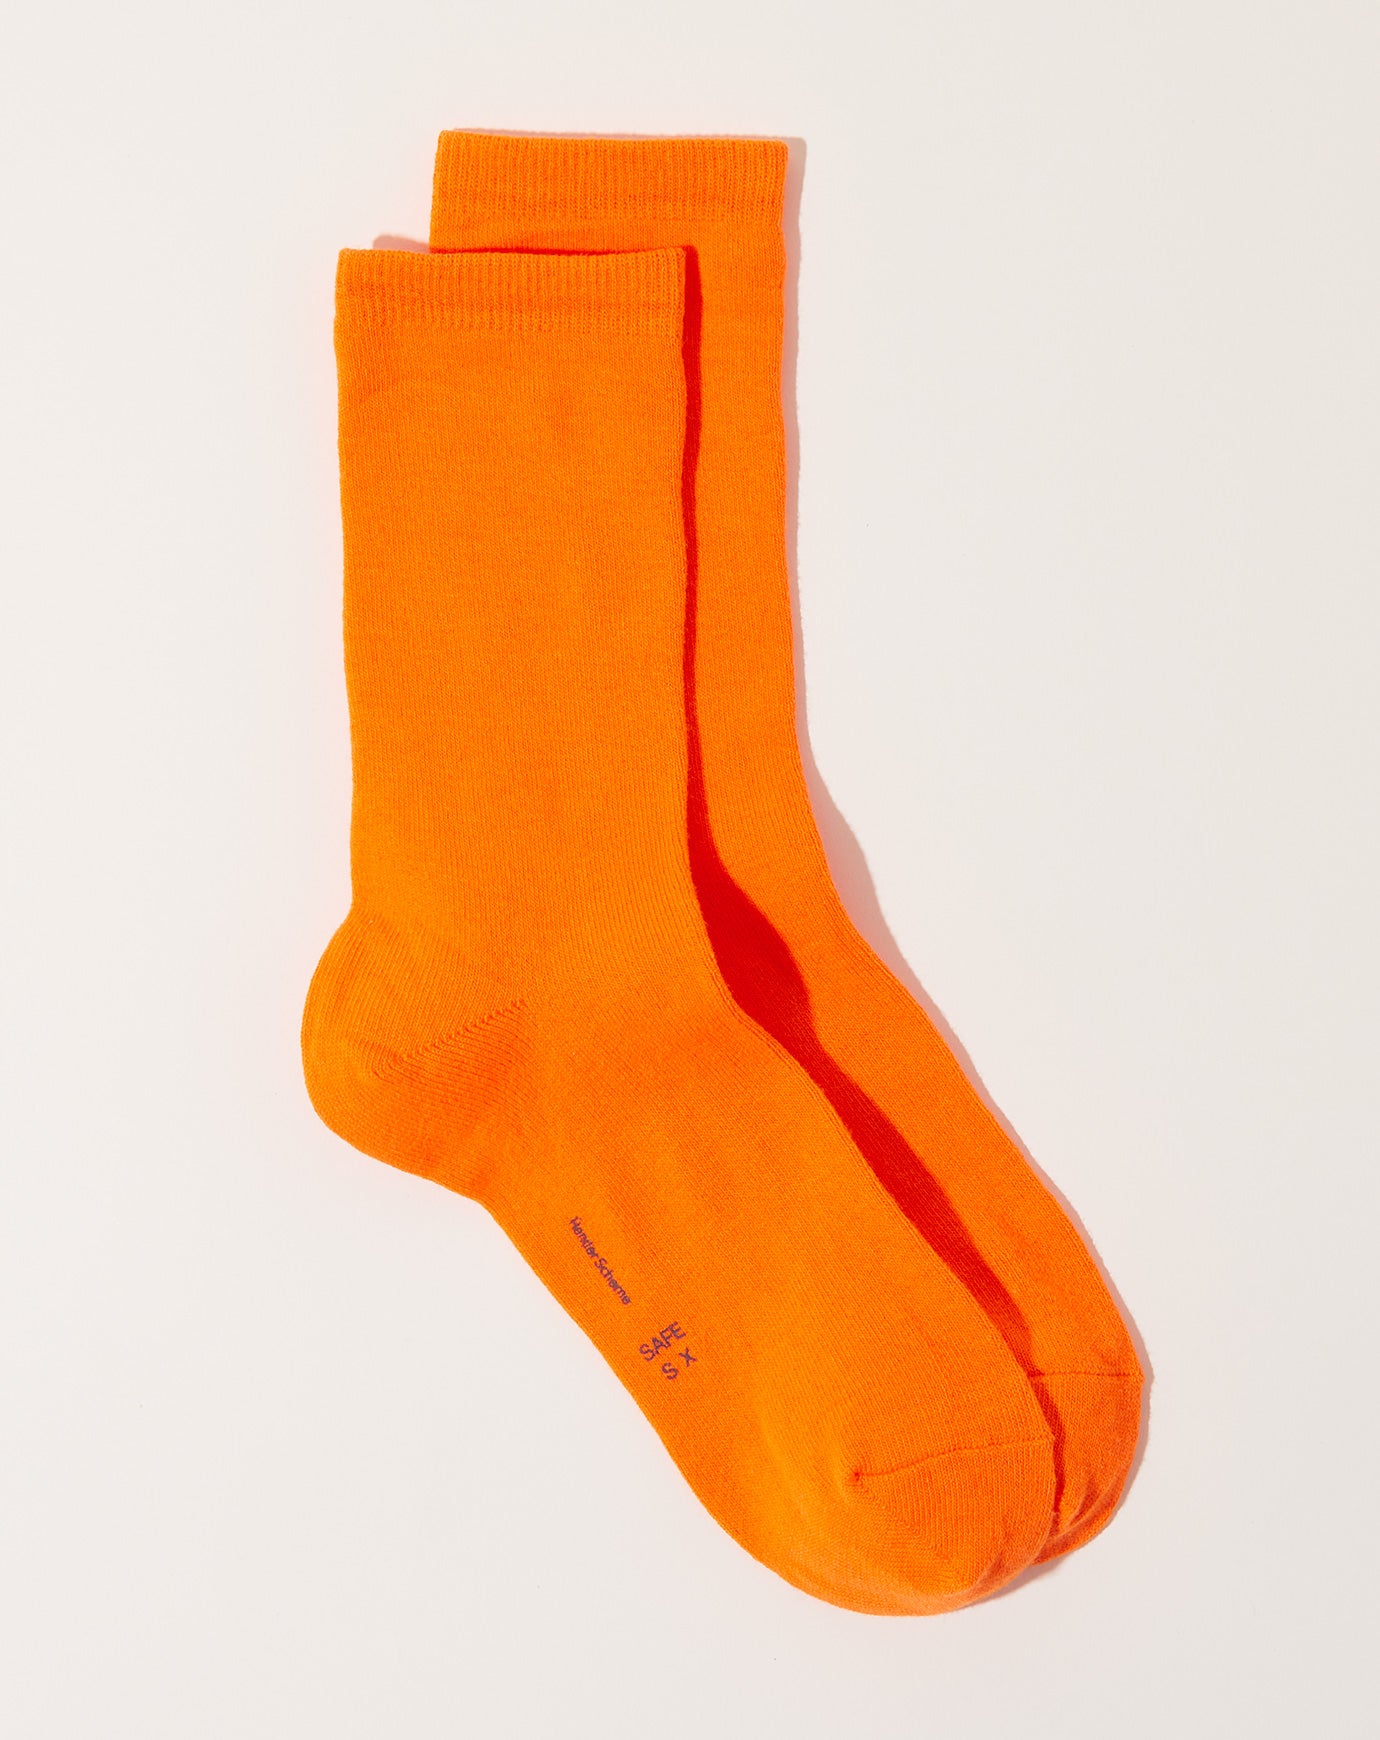 Hender Scheme Safe Socks in Orange